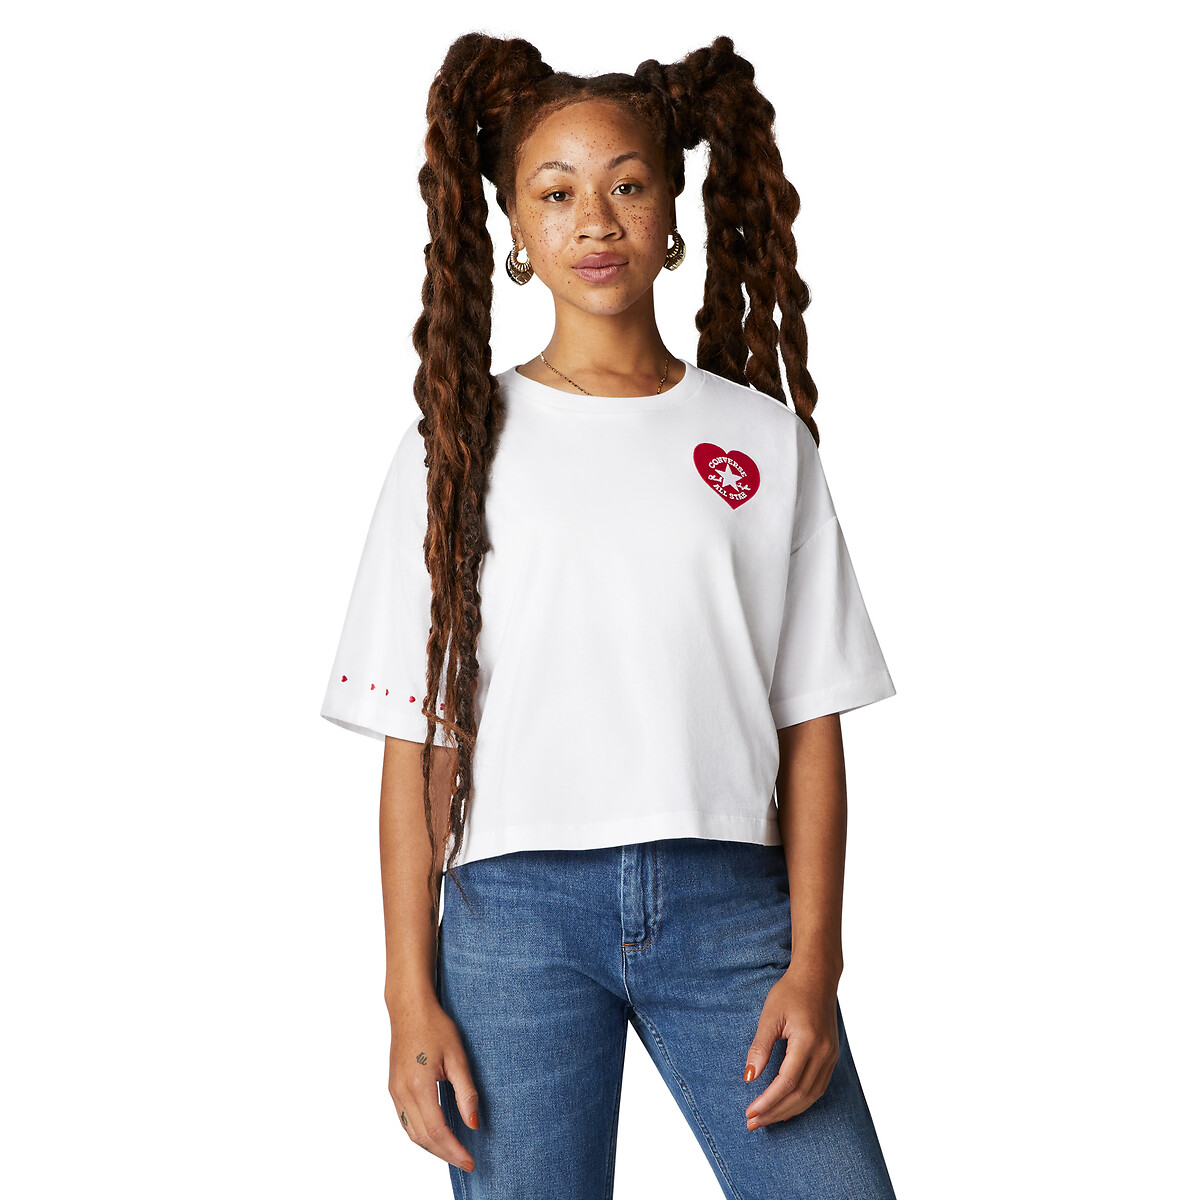 اكواب ورقيه T-shirt femme CONVERSE | La Redoute اكواب ورقيه